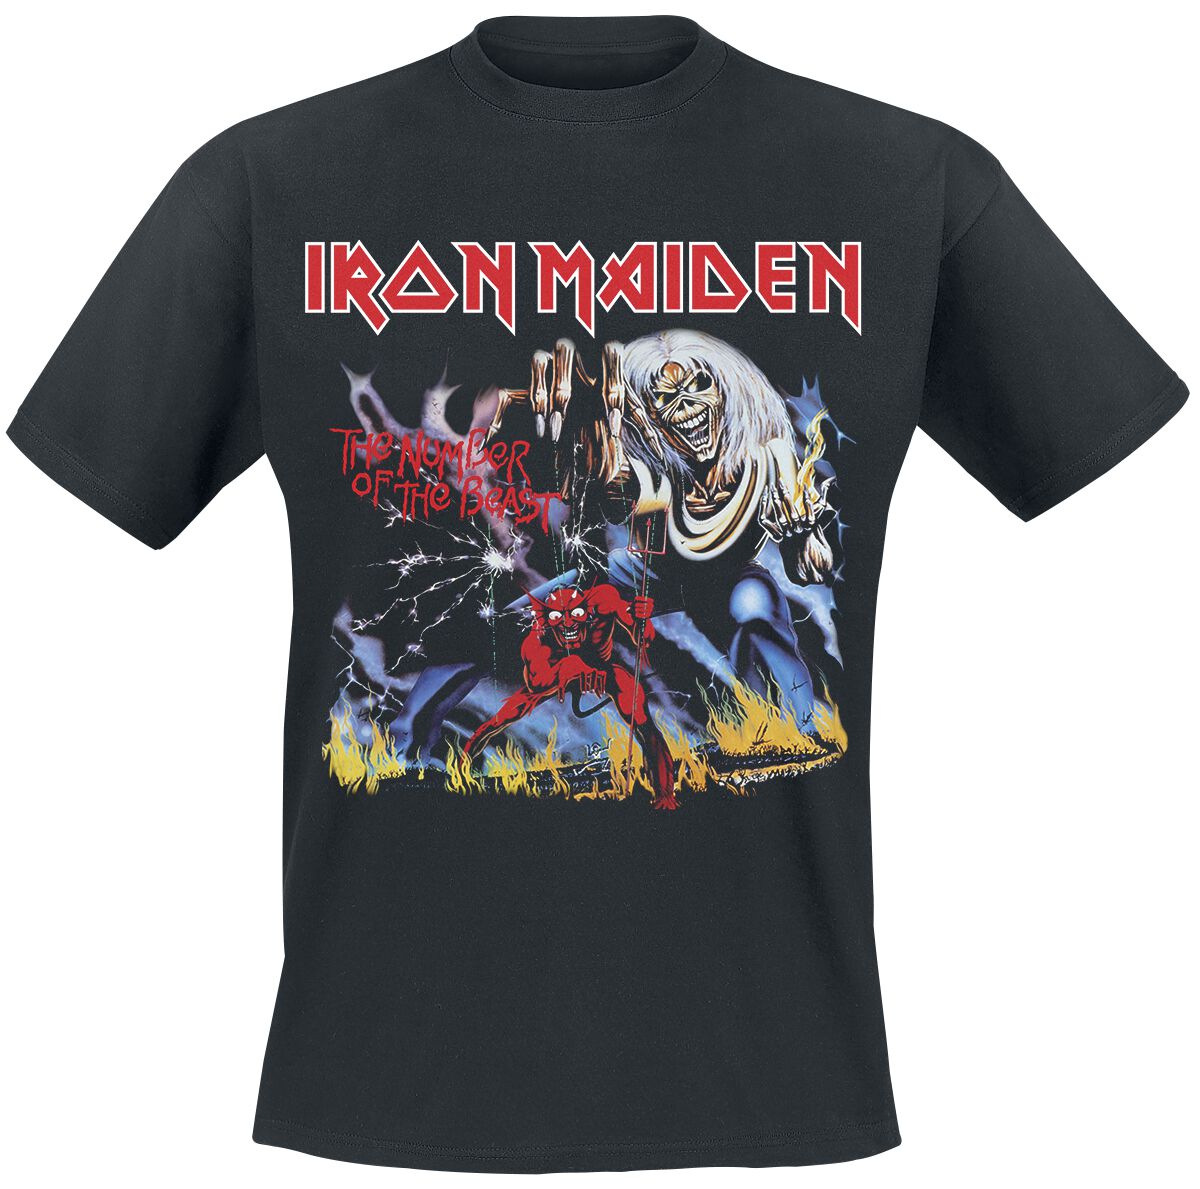 Iron Maiden T-Shirt - Stranger Number Of The Beast - M bis 4XL - für Männer - Größe L - schwarz  - Lizenziertes Merchandise!